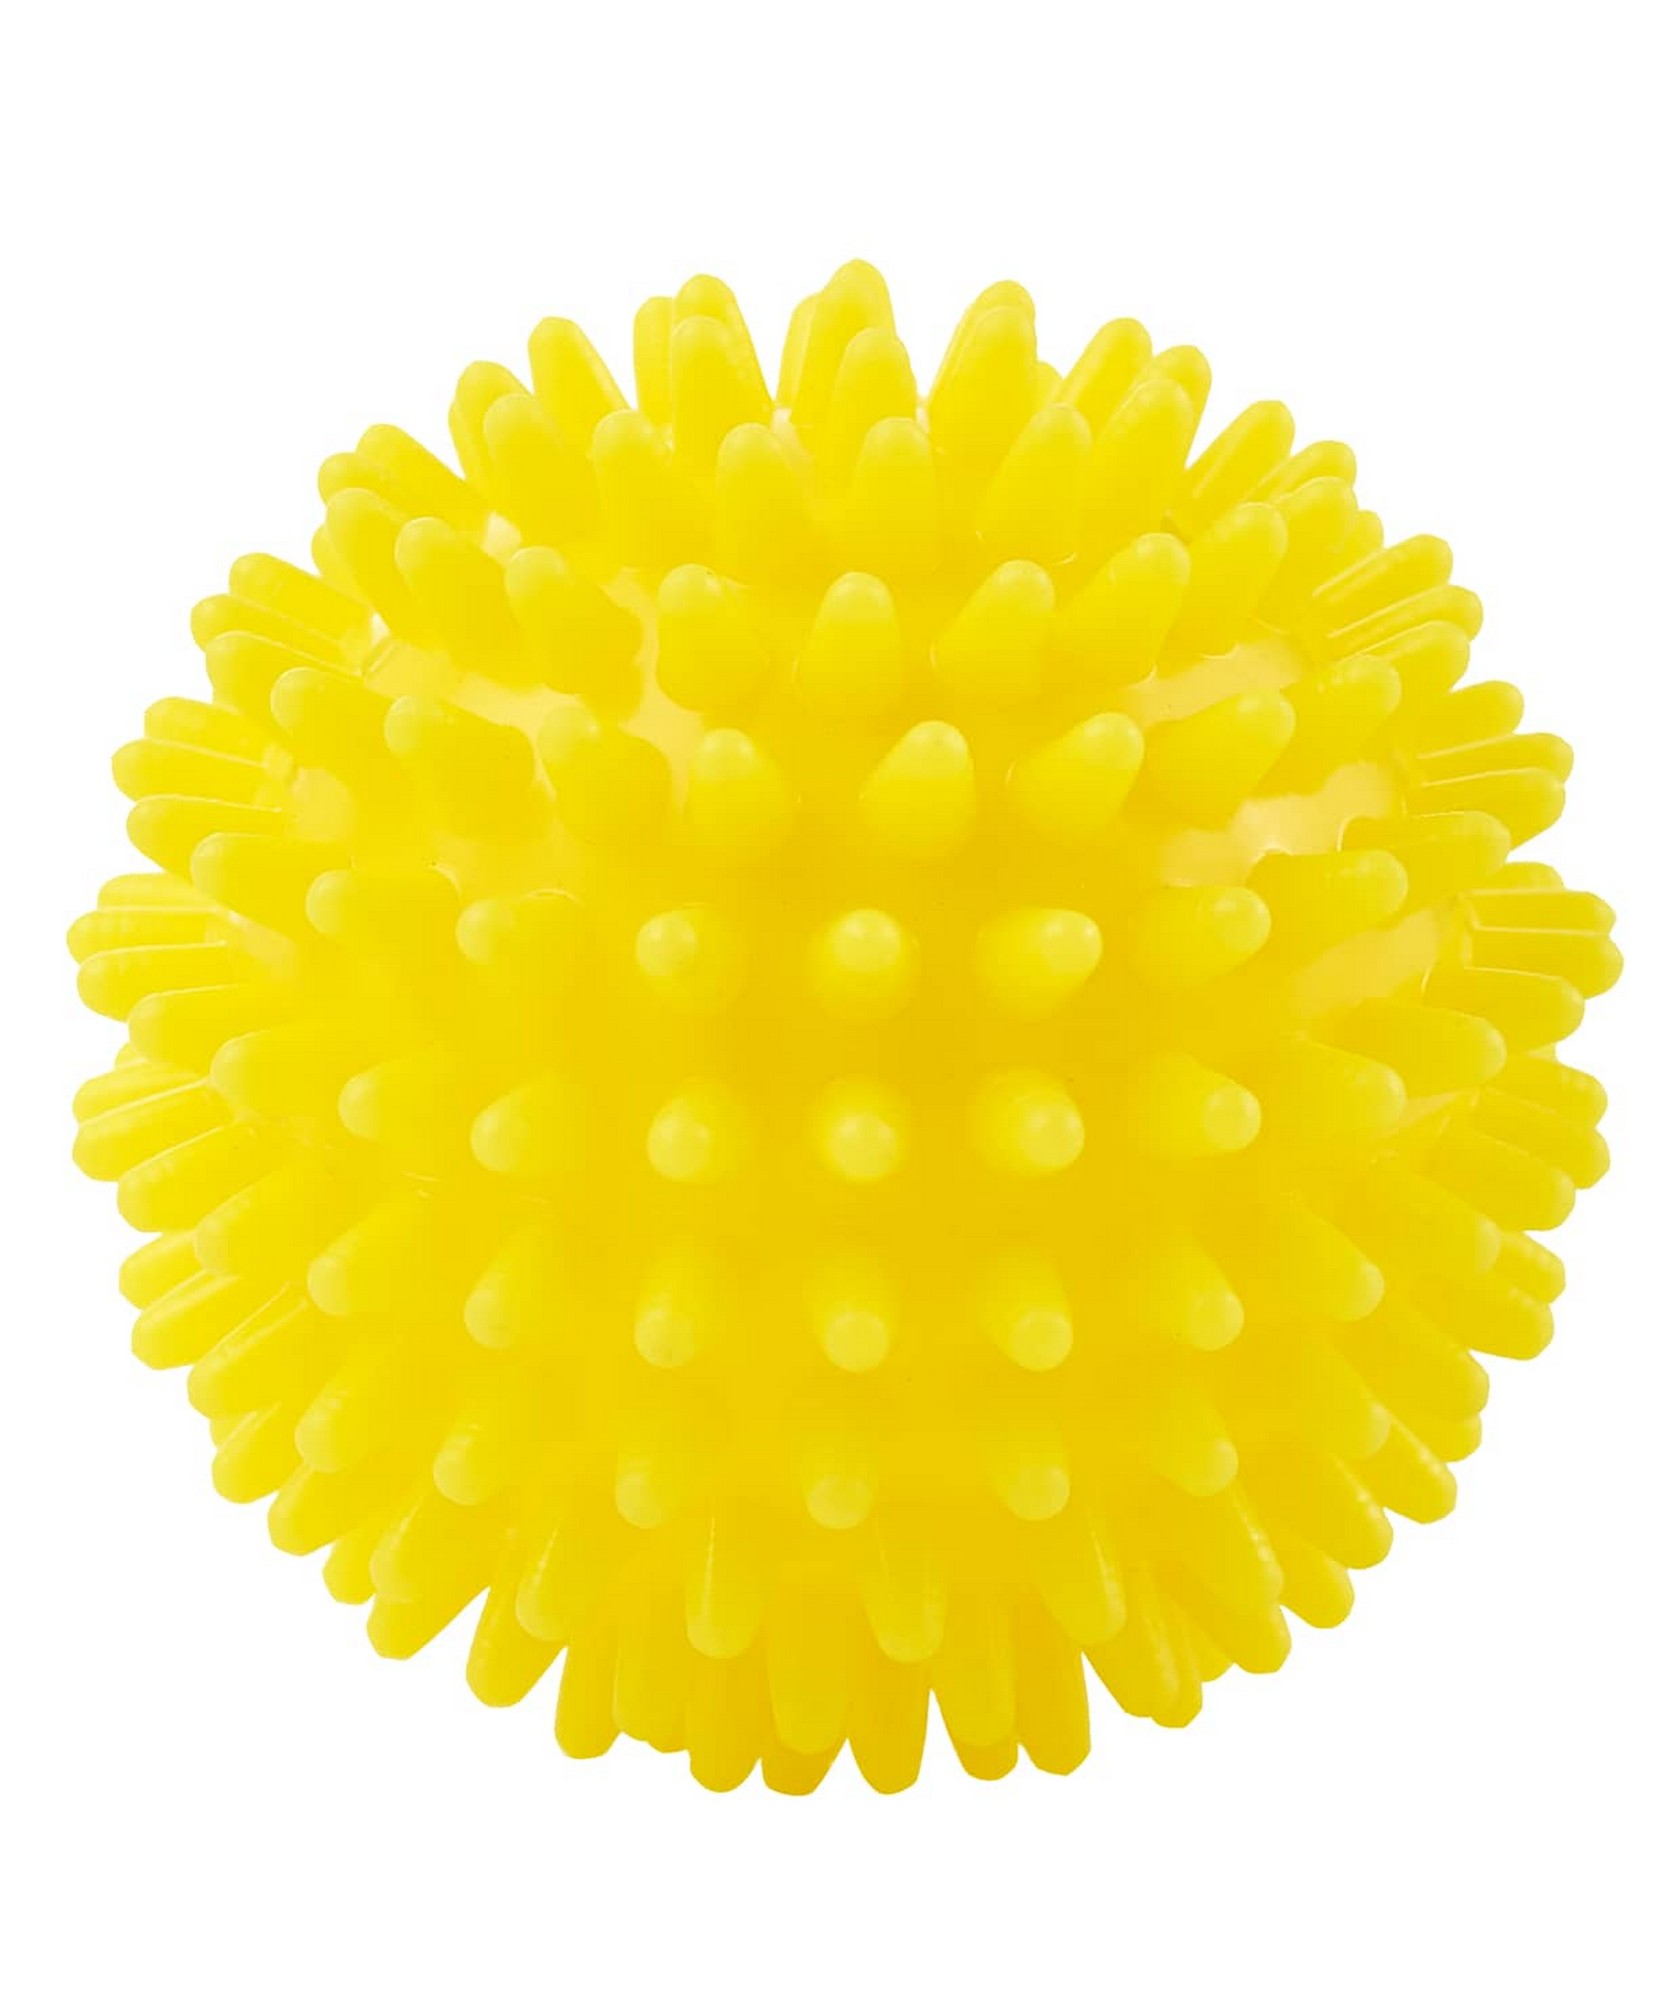 Мяч массажный d6 см BaseFit GB-602 желтый